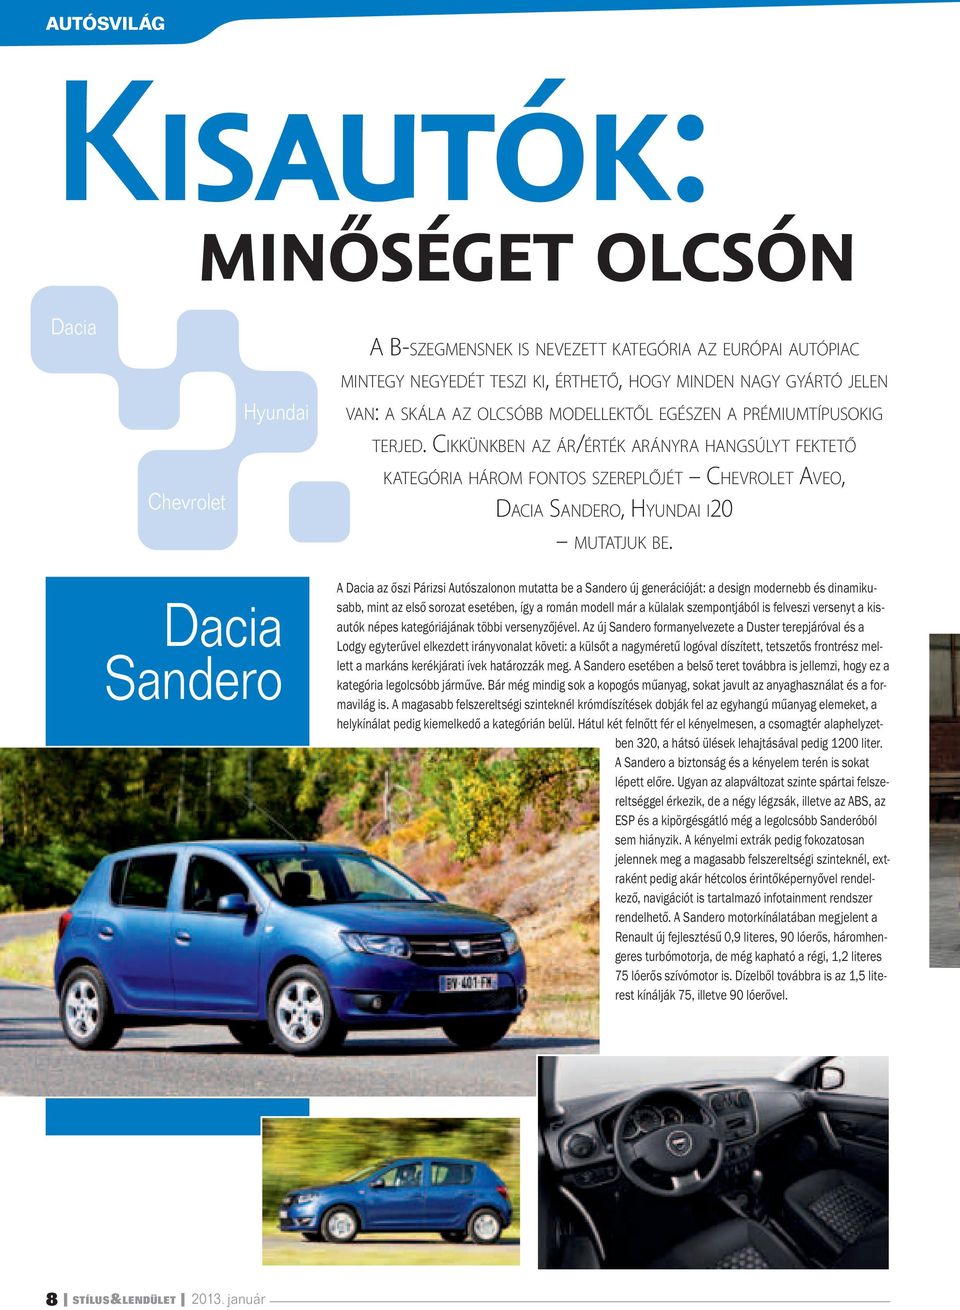 Dacia Sandero A Dacia az őszi Párizsi Autószalonon mutatta be a Sandero új generációját: a design modernebb és dinamikusabb, mint az első sorozat esetében, így a román modell már a külalak